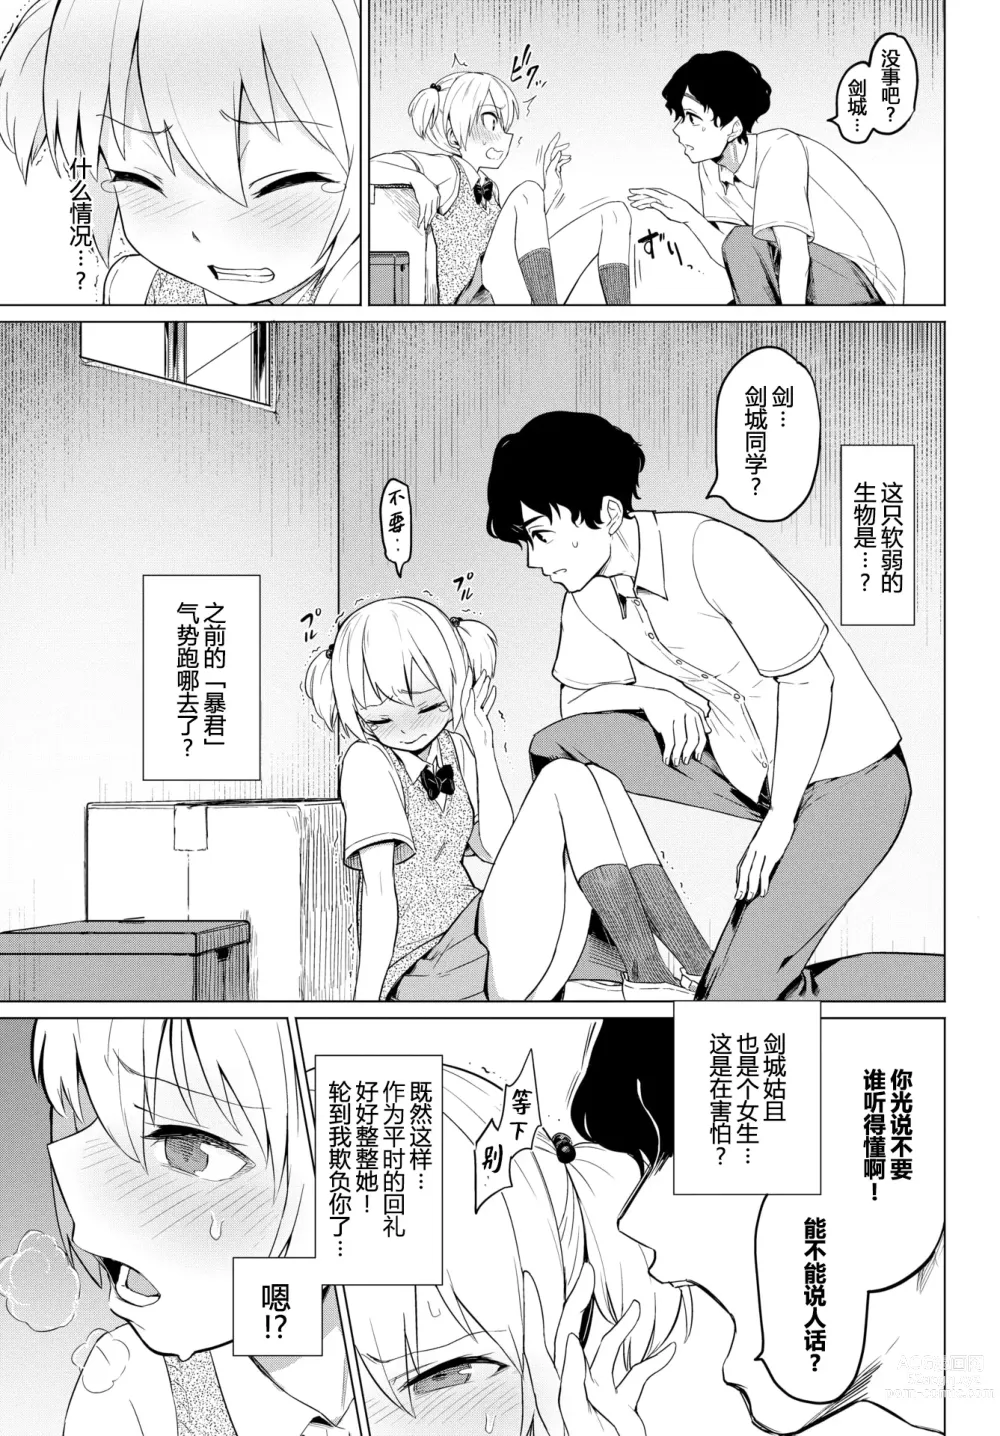 Page 3 of manga Boukun-kei Joshi